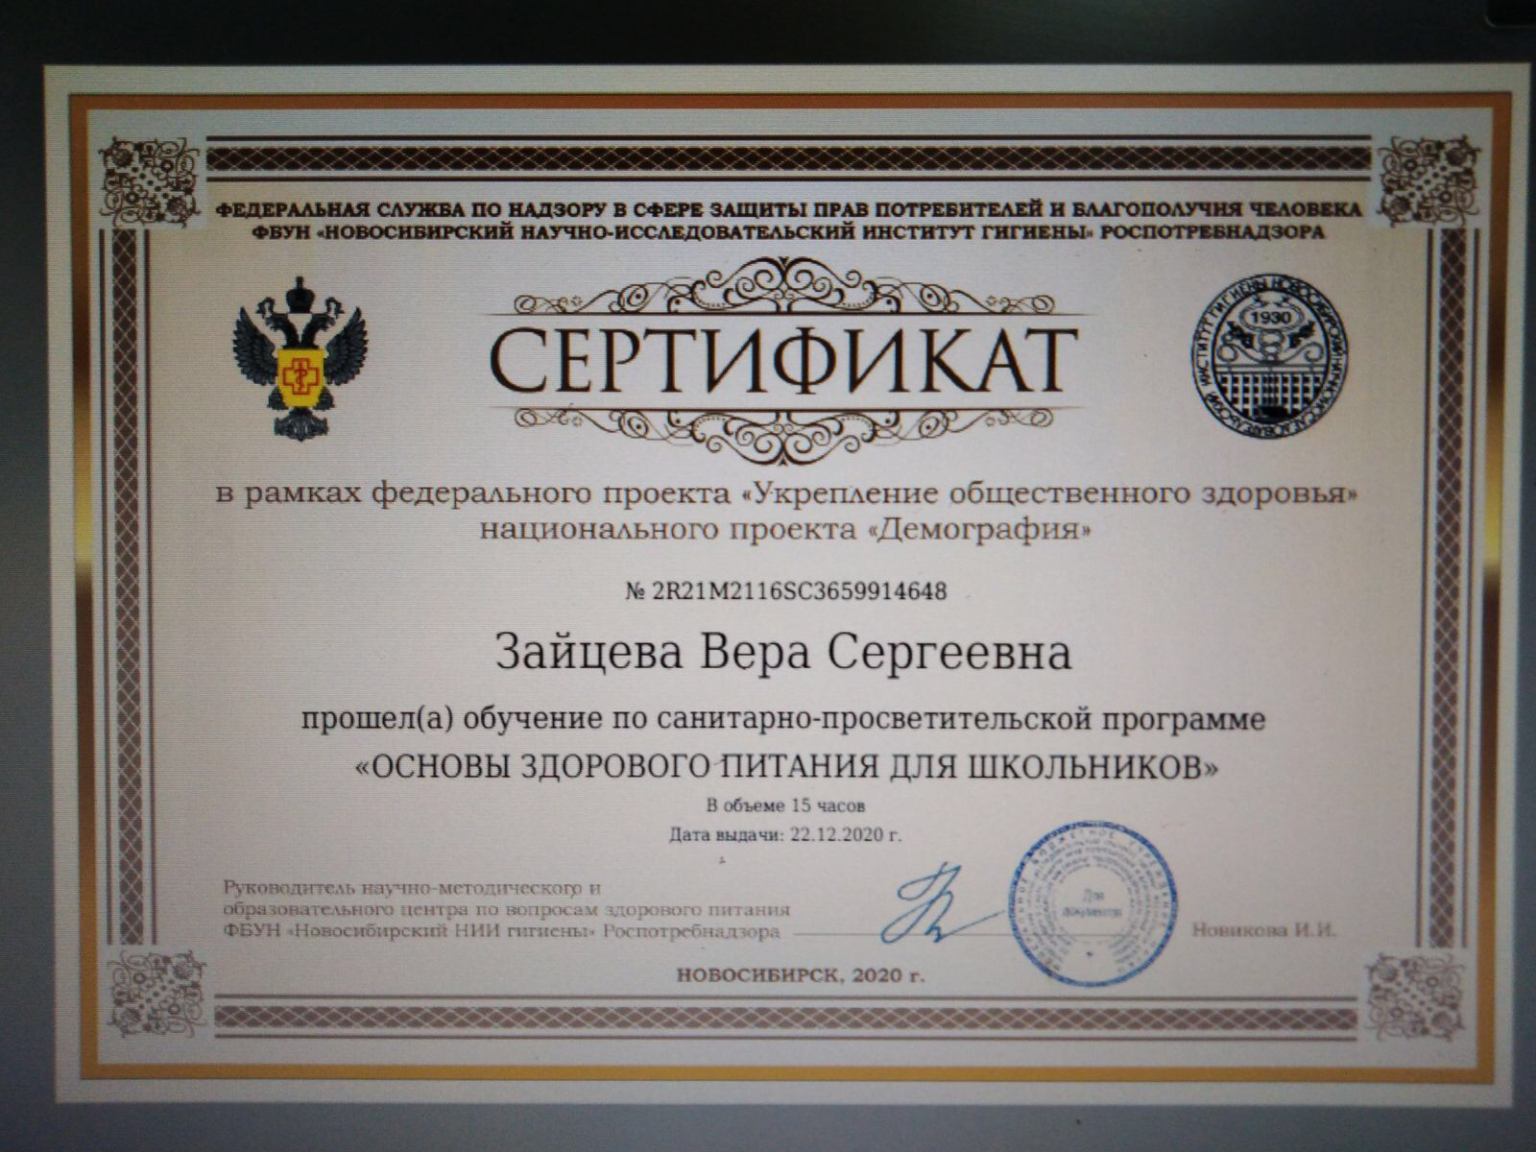 Https www niig su войти. Сертификат Новосибирский научно-исследовательский институт гигиены. Сертификат Новосибирского института гигиены. Сертификат Роспотребнадзора. Основы здорового питания сертификат.